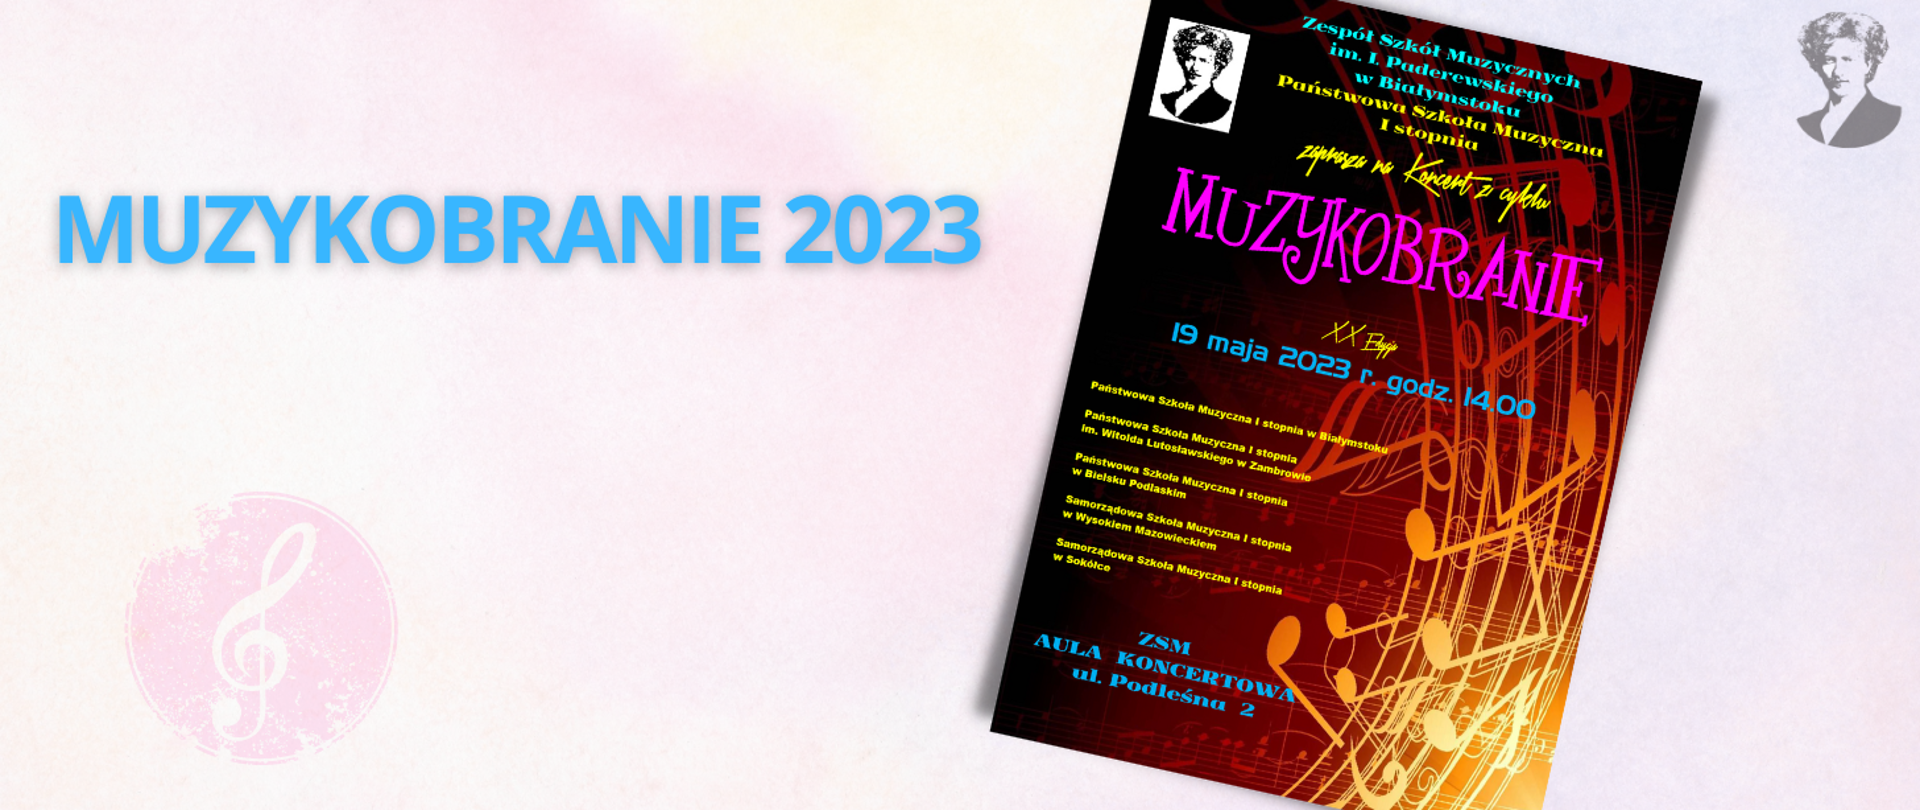 Różowo-fioletowa grafika z niebieskim napisem "MUZYKOBRANIE 2023", po prawej stronie miniatura plakatu wydarzenia i podobizna Paderewskiego.